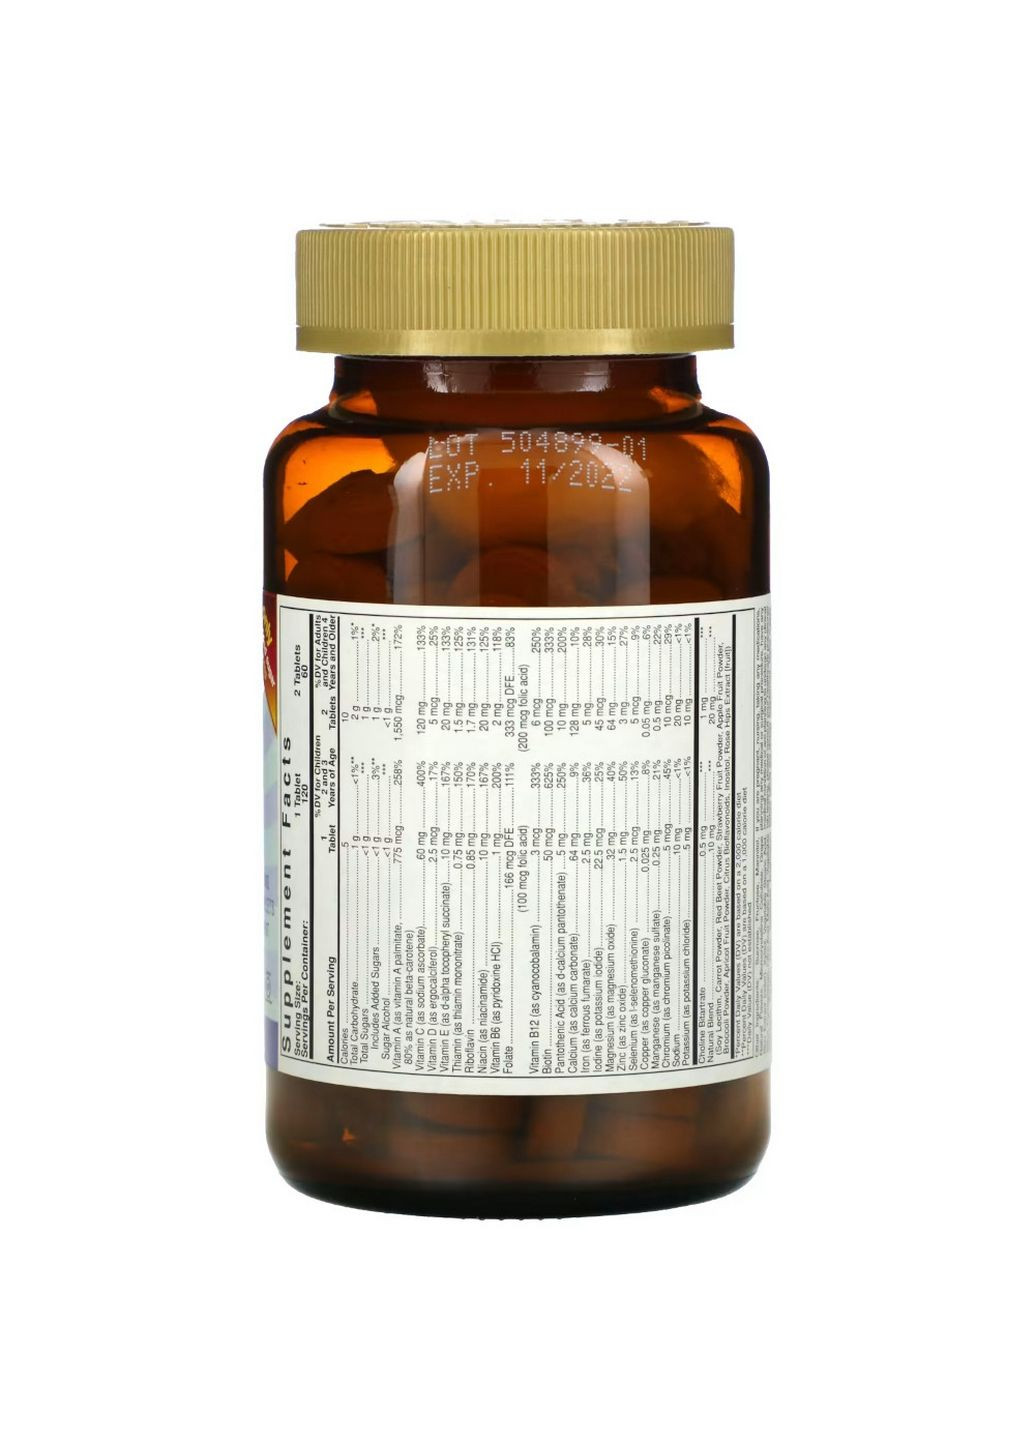 Вітаміни та мінерали Kangavites, 120 жувальних таблеток Ягоди Solgar (293479096)